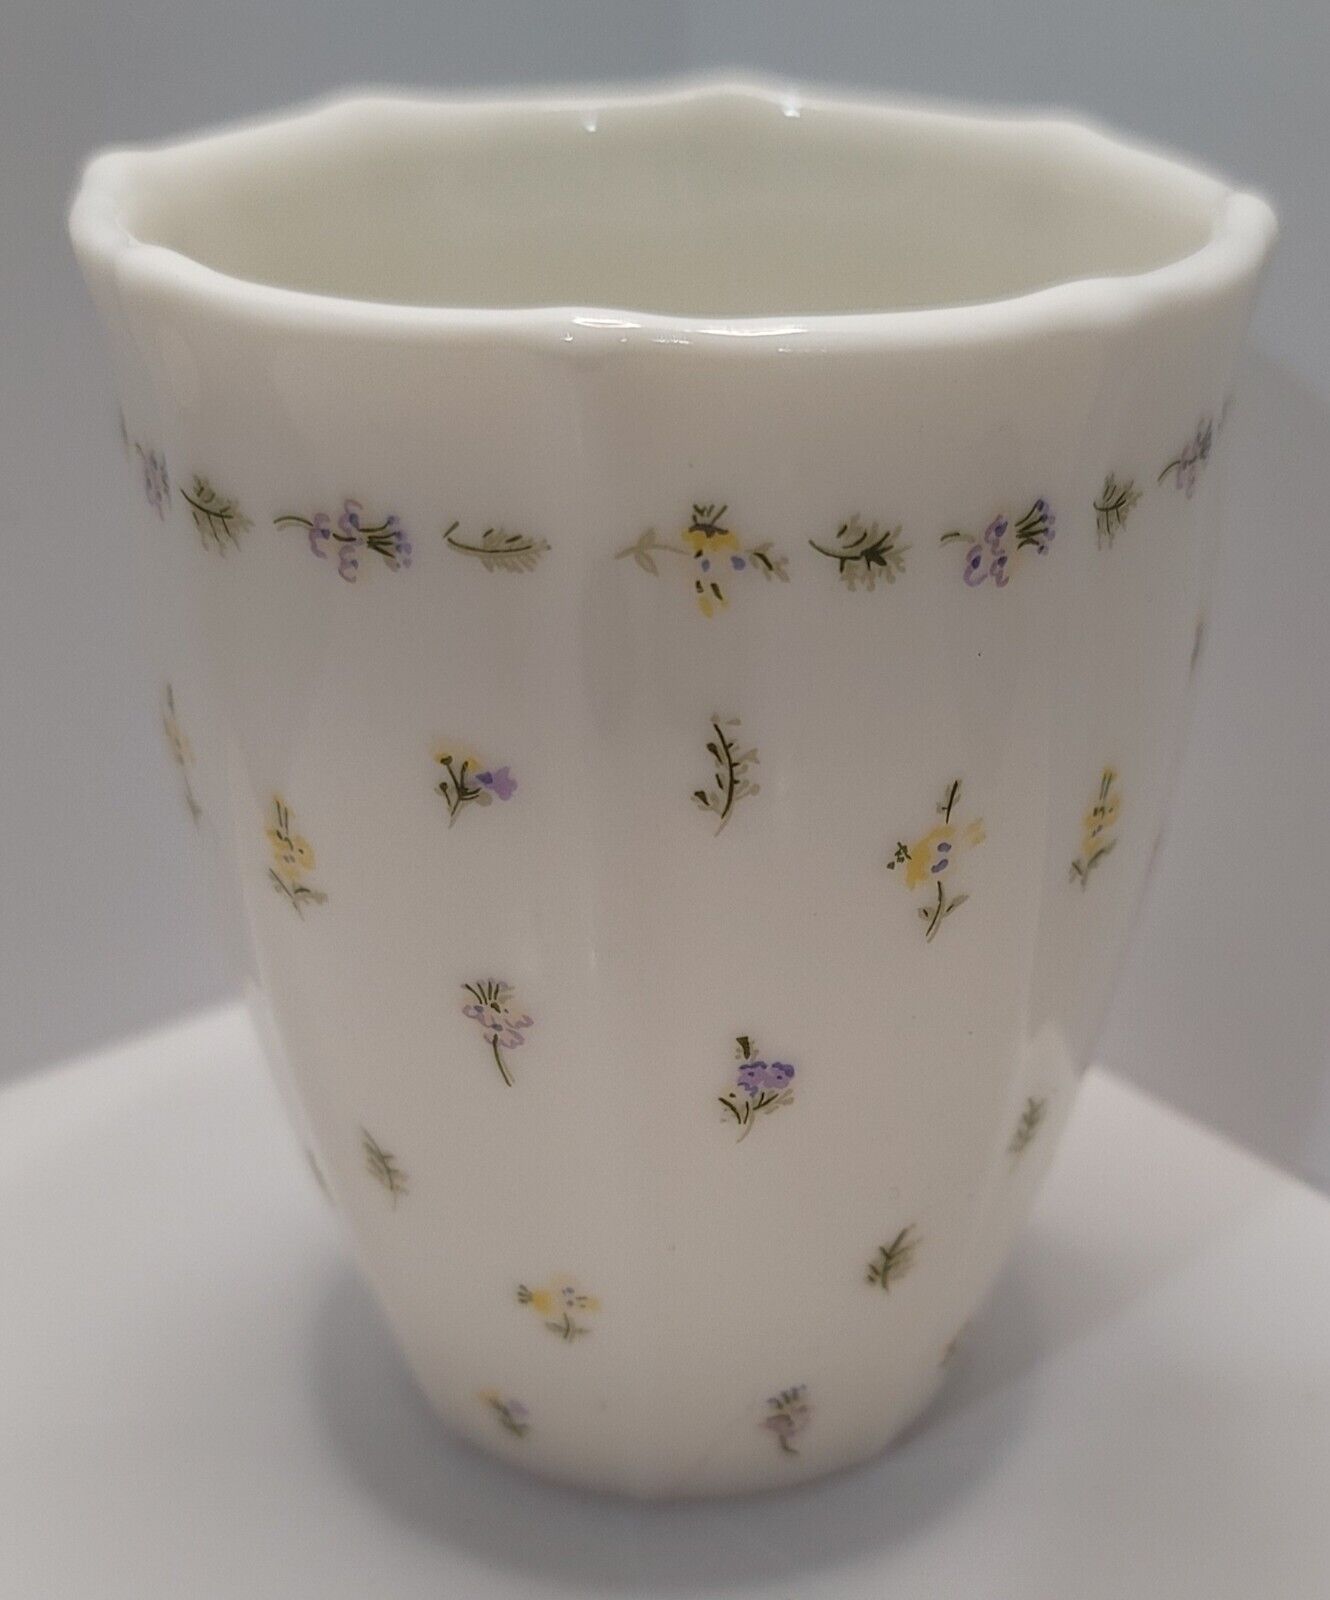 Martha Stewart Vanity Cup White Ceramic Floral Design